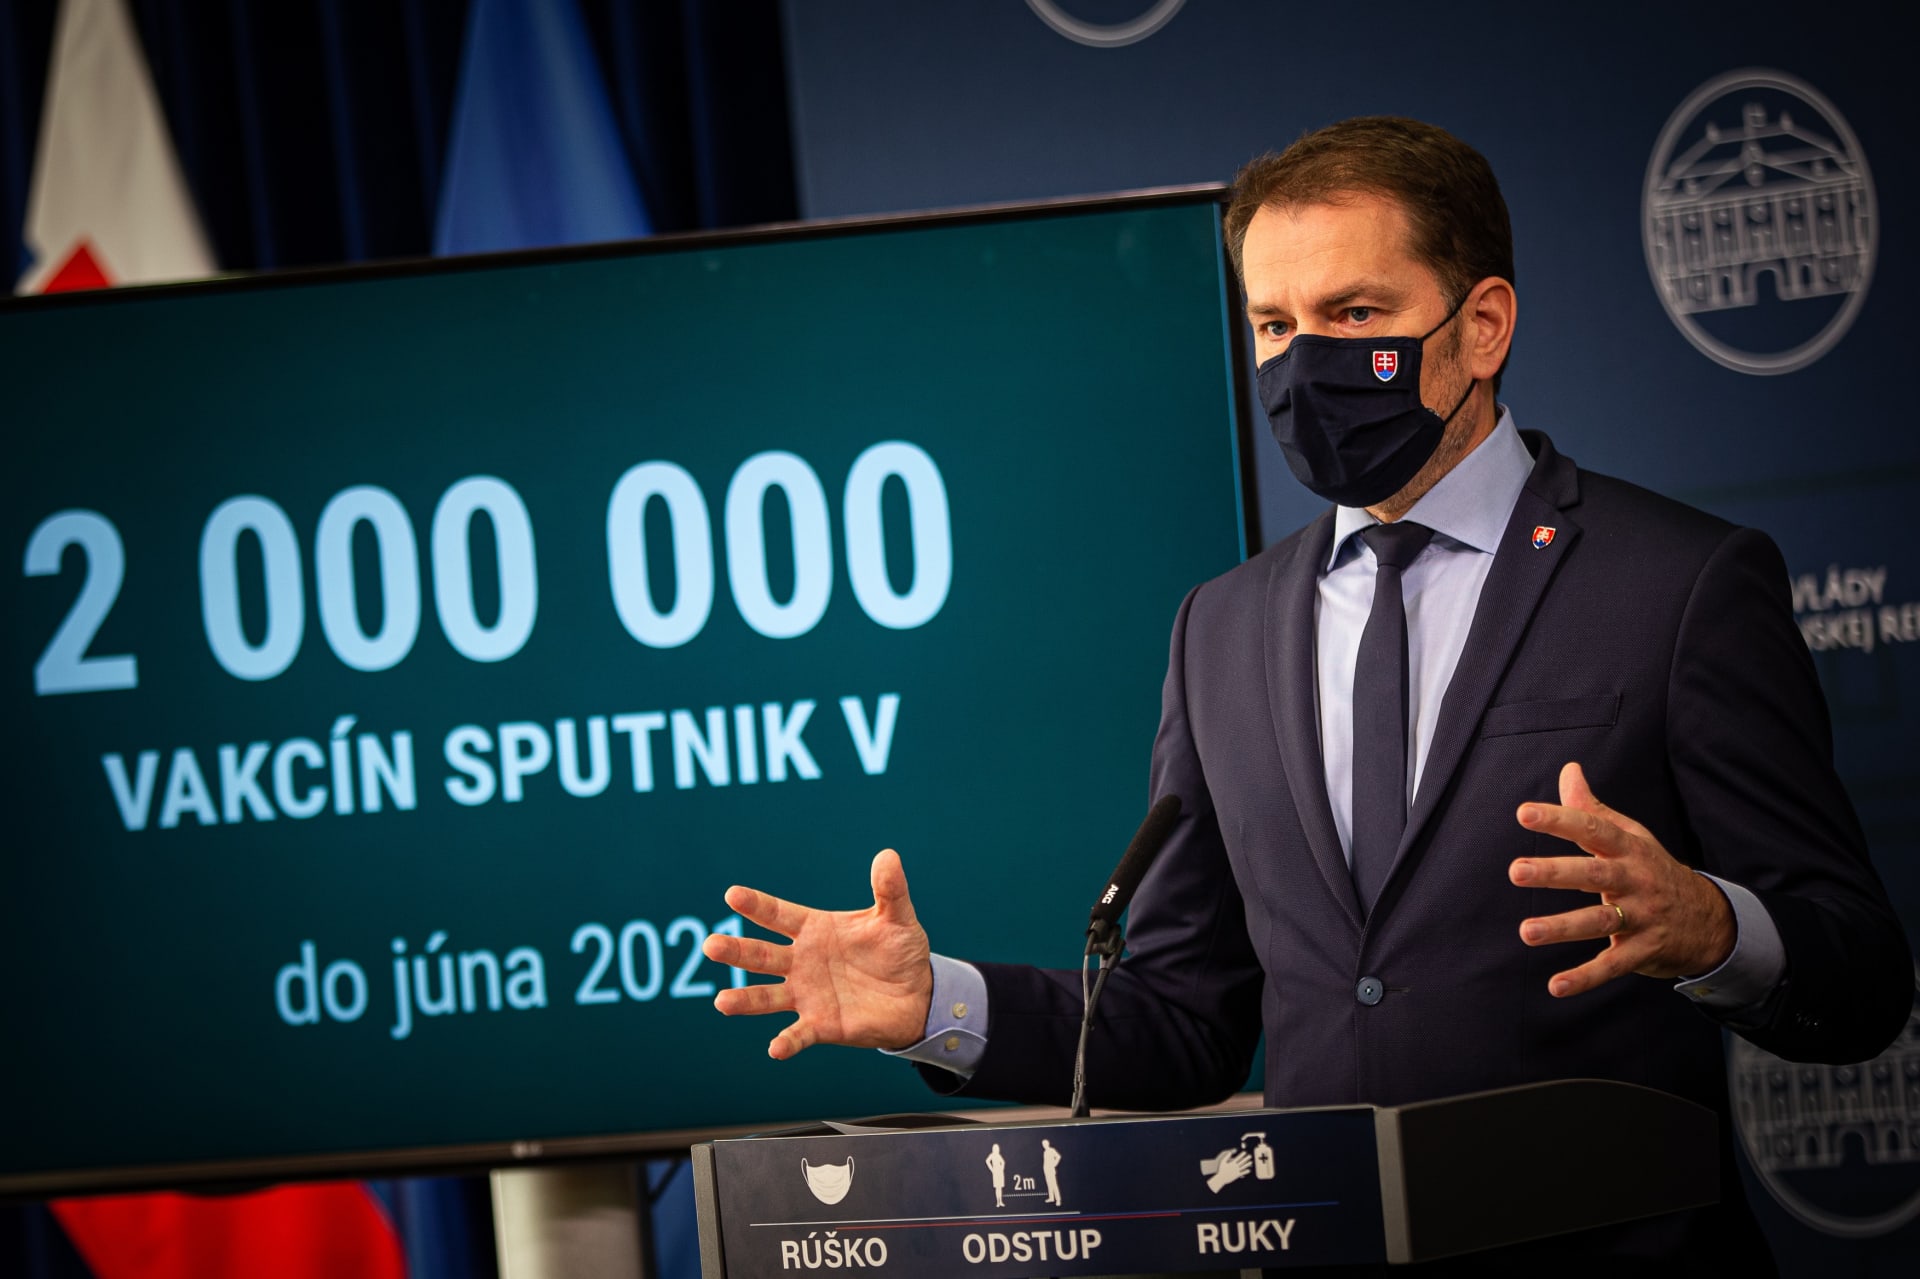 Sputnik V na Slovensko dostal v březnu nynější ministr financí Igor Matovič, tehdy ještě premiér. Kvůli tomu však v zemi vypukla koaliční krize, která vedla až k jeho rezignaci a změnám ve vládě.